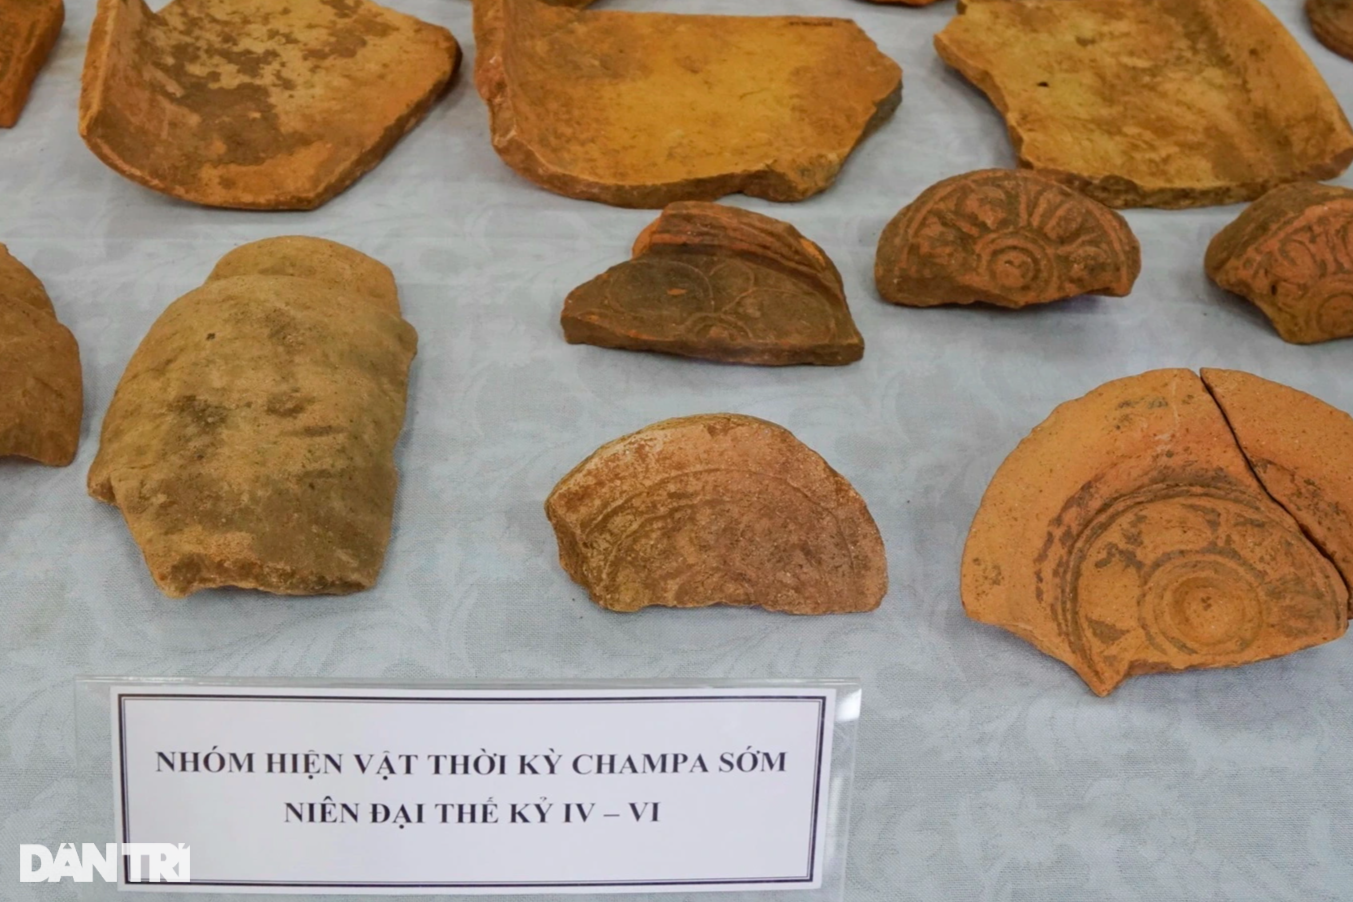 Khai quật phế tích cổ hơn 1.500 năm của người Chăm ở Bình Định - 2